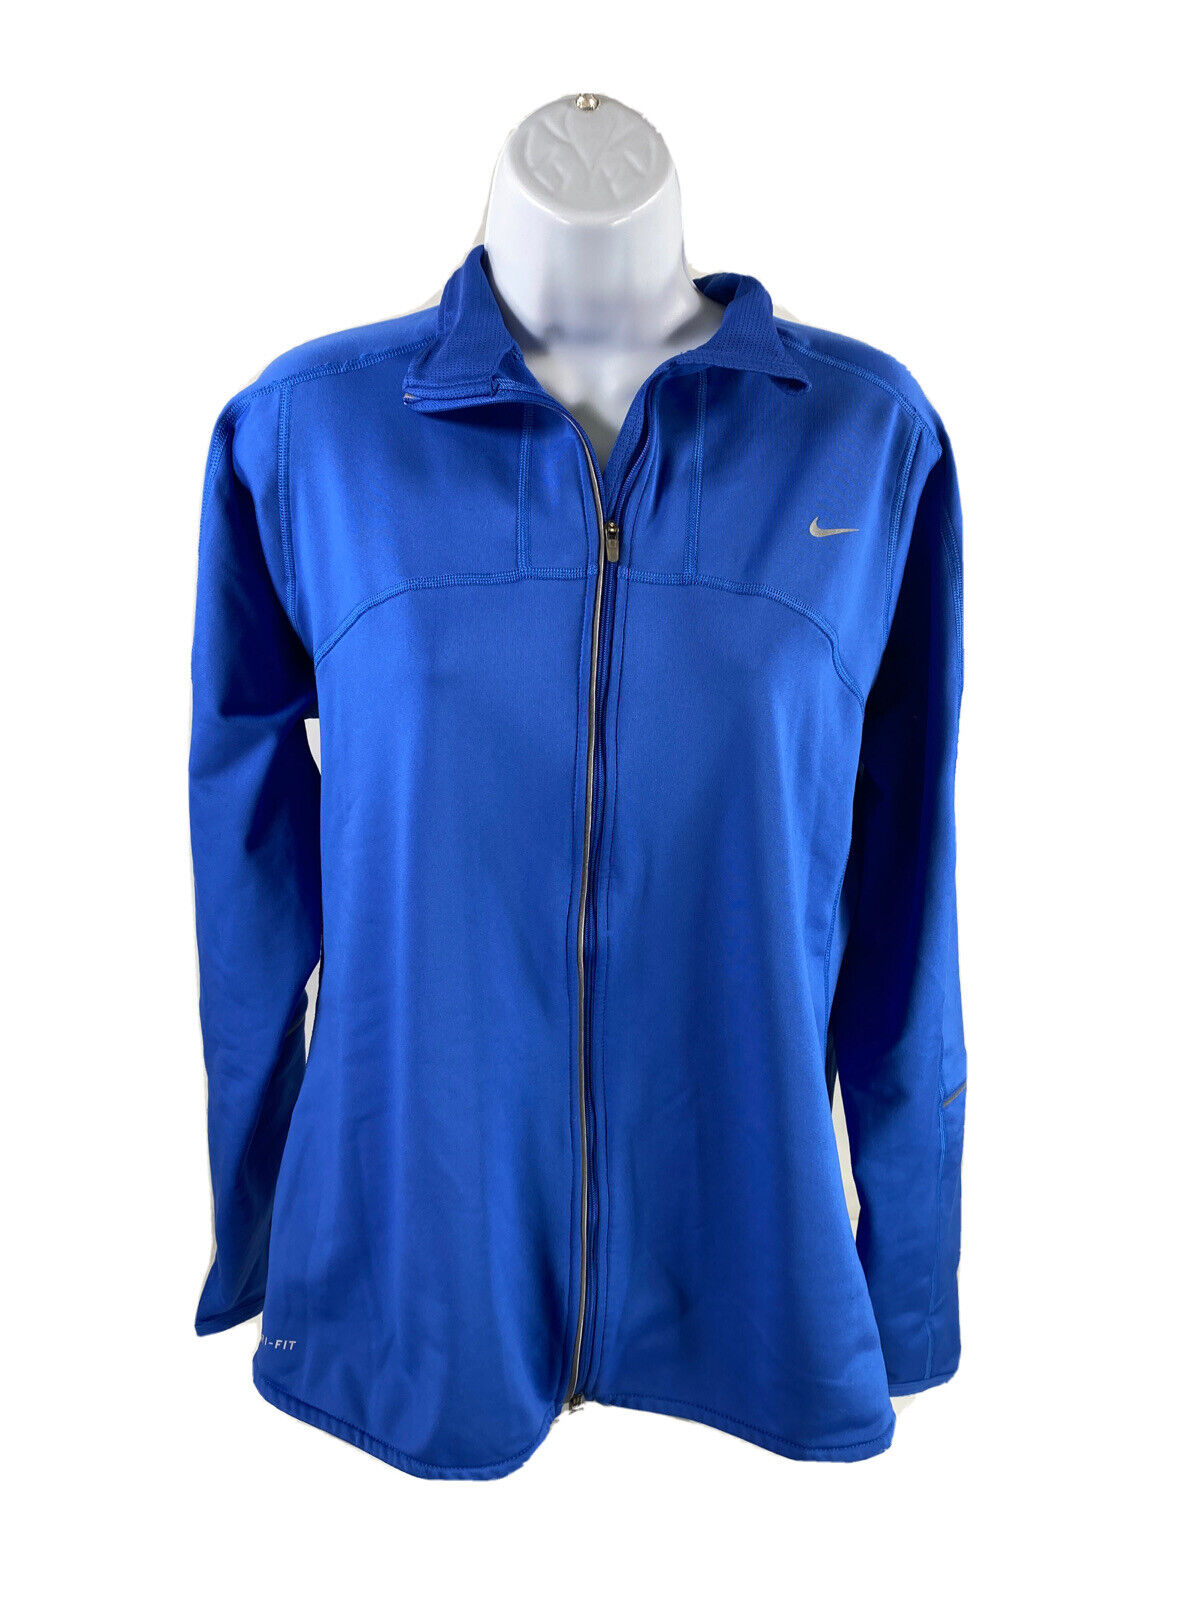 Nike Women's Blue Dri-Fit Fleece Lined Full Zip Athletic Jacket - XL